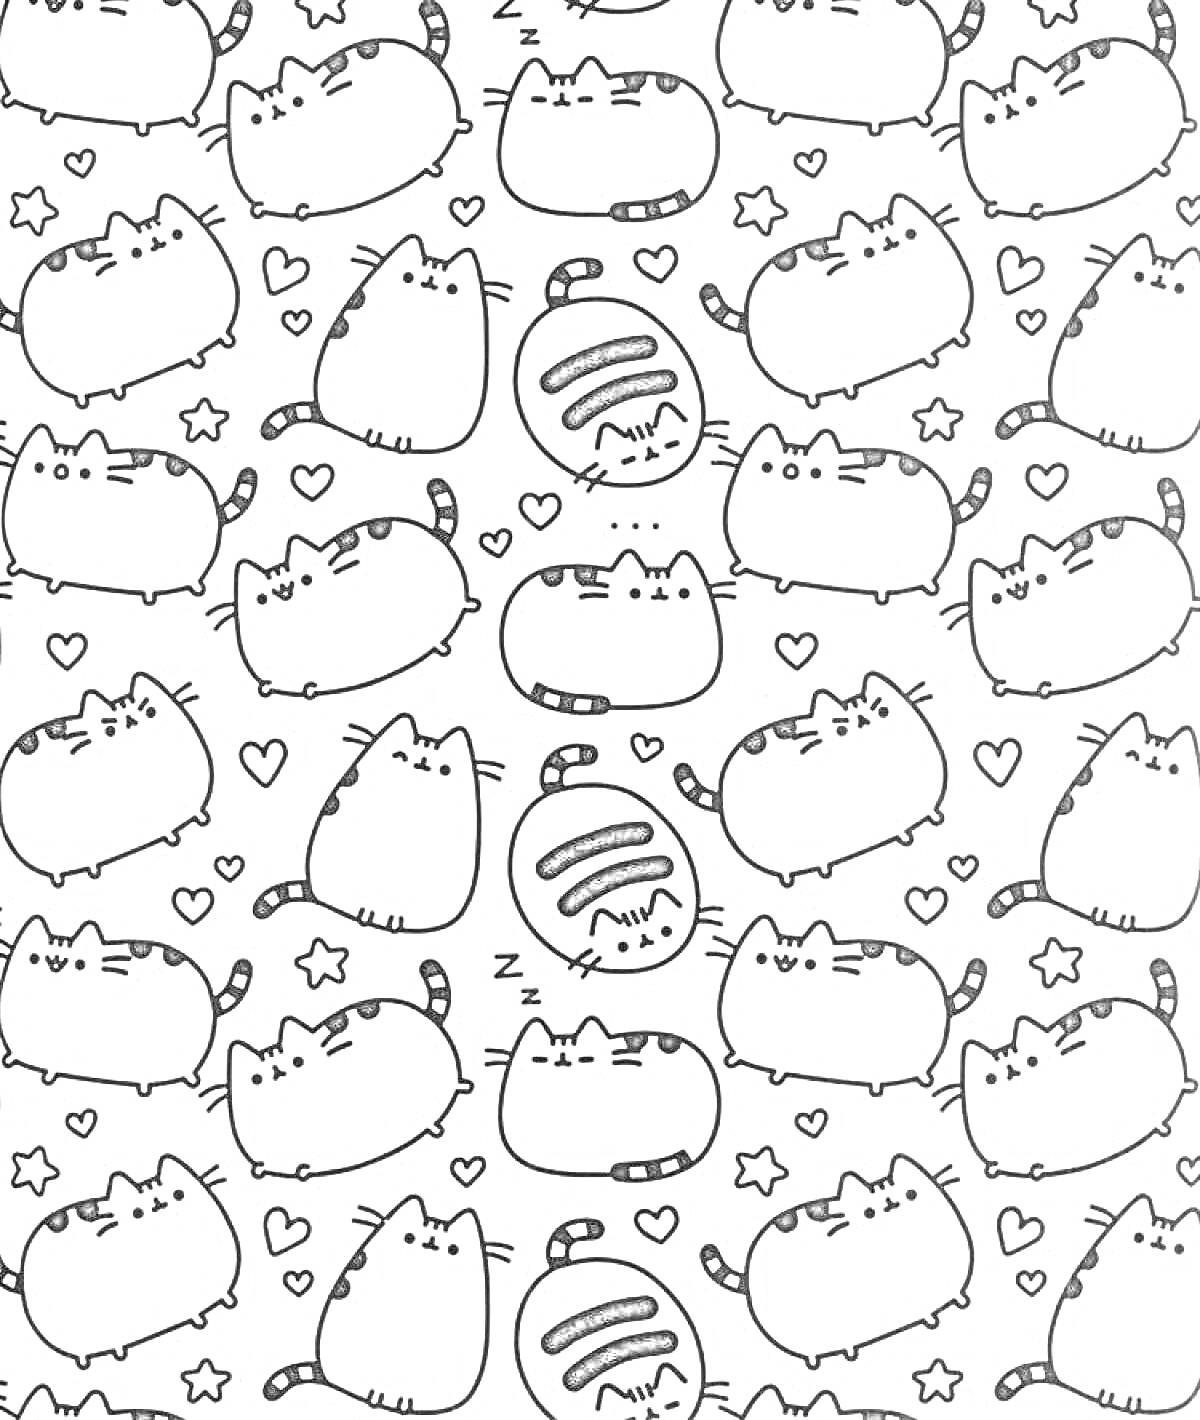 Раскраска Котики и символы (спящие котики, звездочки, сердечки)